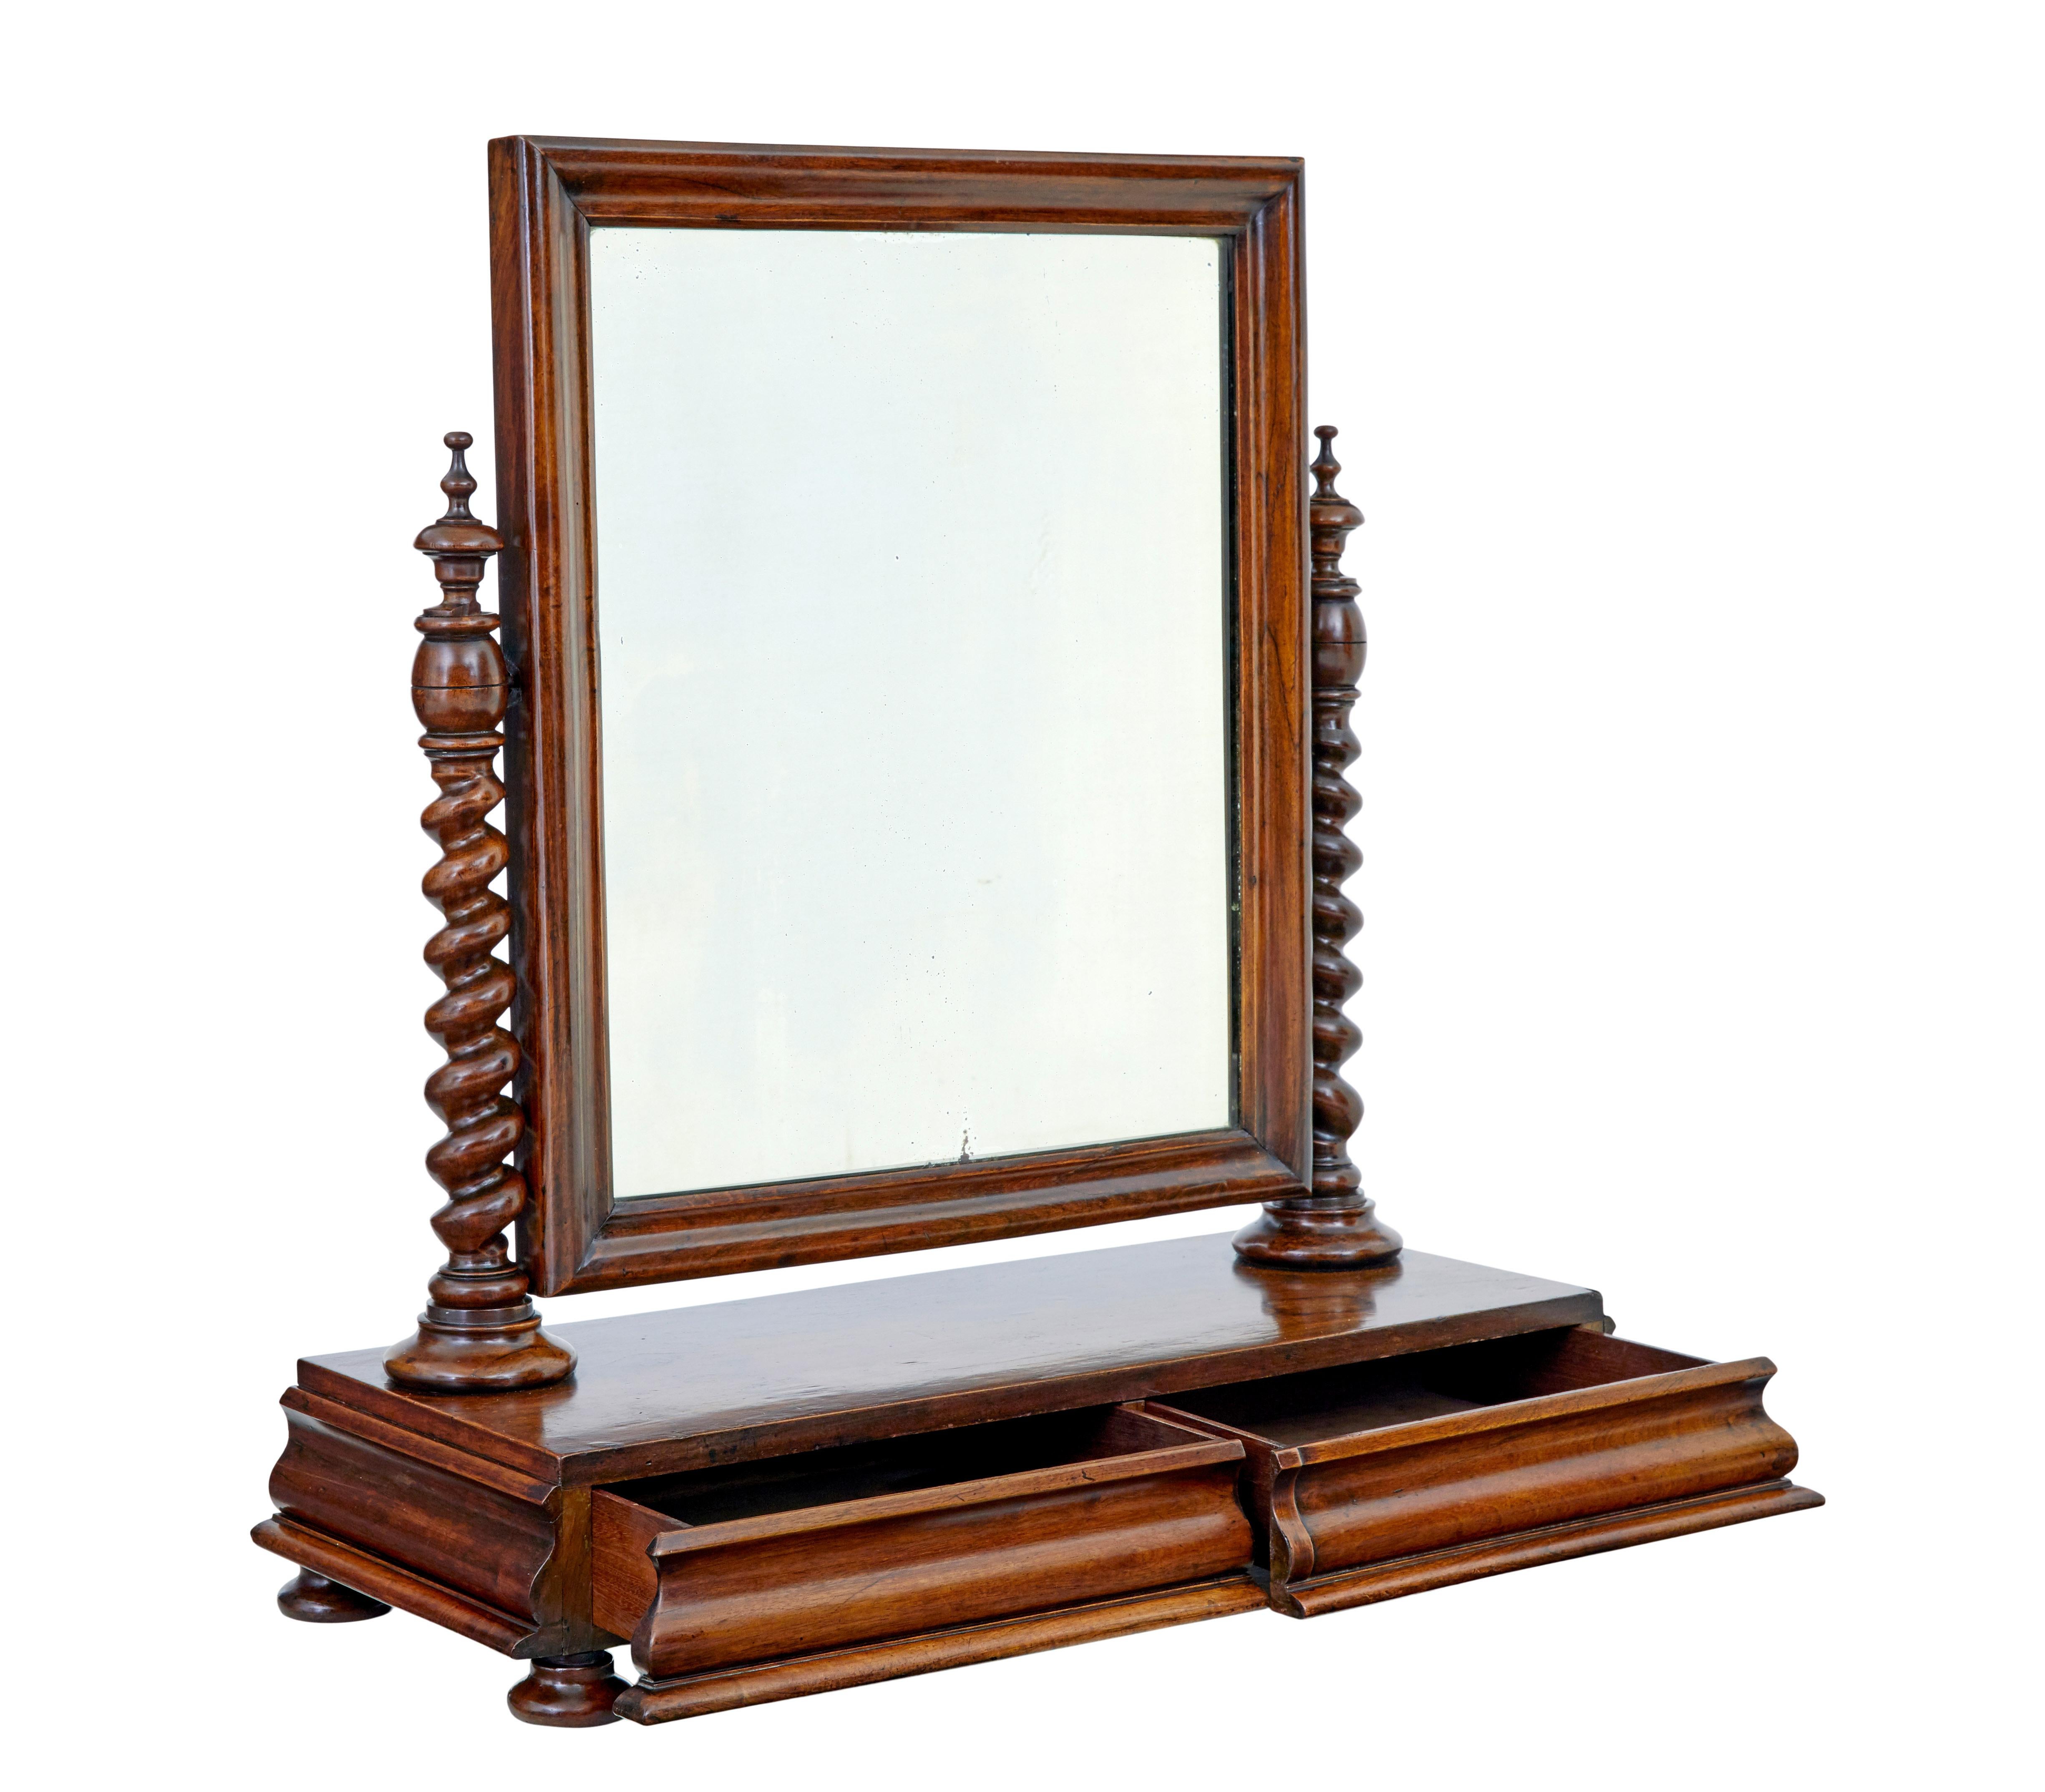 Toilettenspiegel aus geschnitztem Nussbaumholz, Mitte 19. Jahrhundert, um 1860.

Sehr gute Qualität und für diese Art von Spiegel recht große Ausmaße.

Original-Spiegelplatte in einem geformten Nussbaum-Rahmen, Schwenkfunktion, die gut hält